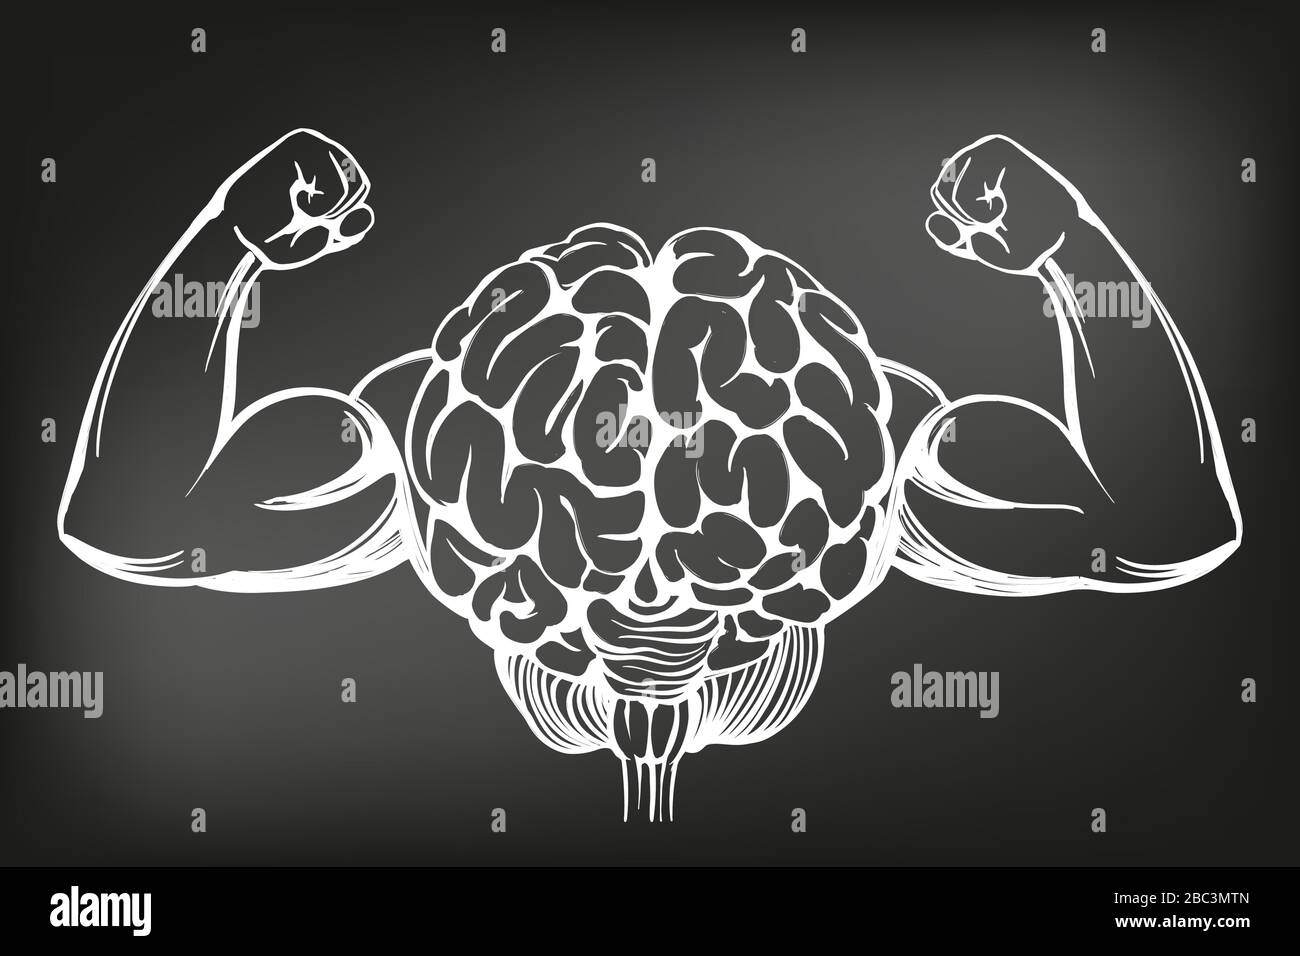 cerveau à mains fortes, entraînement du cerveau, dessin d'illustration vectorielle dessinée à la main sur une icône dessinée à la main, dessiné à la craie sur un tableau noir Illustration de Vecteur